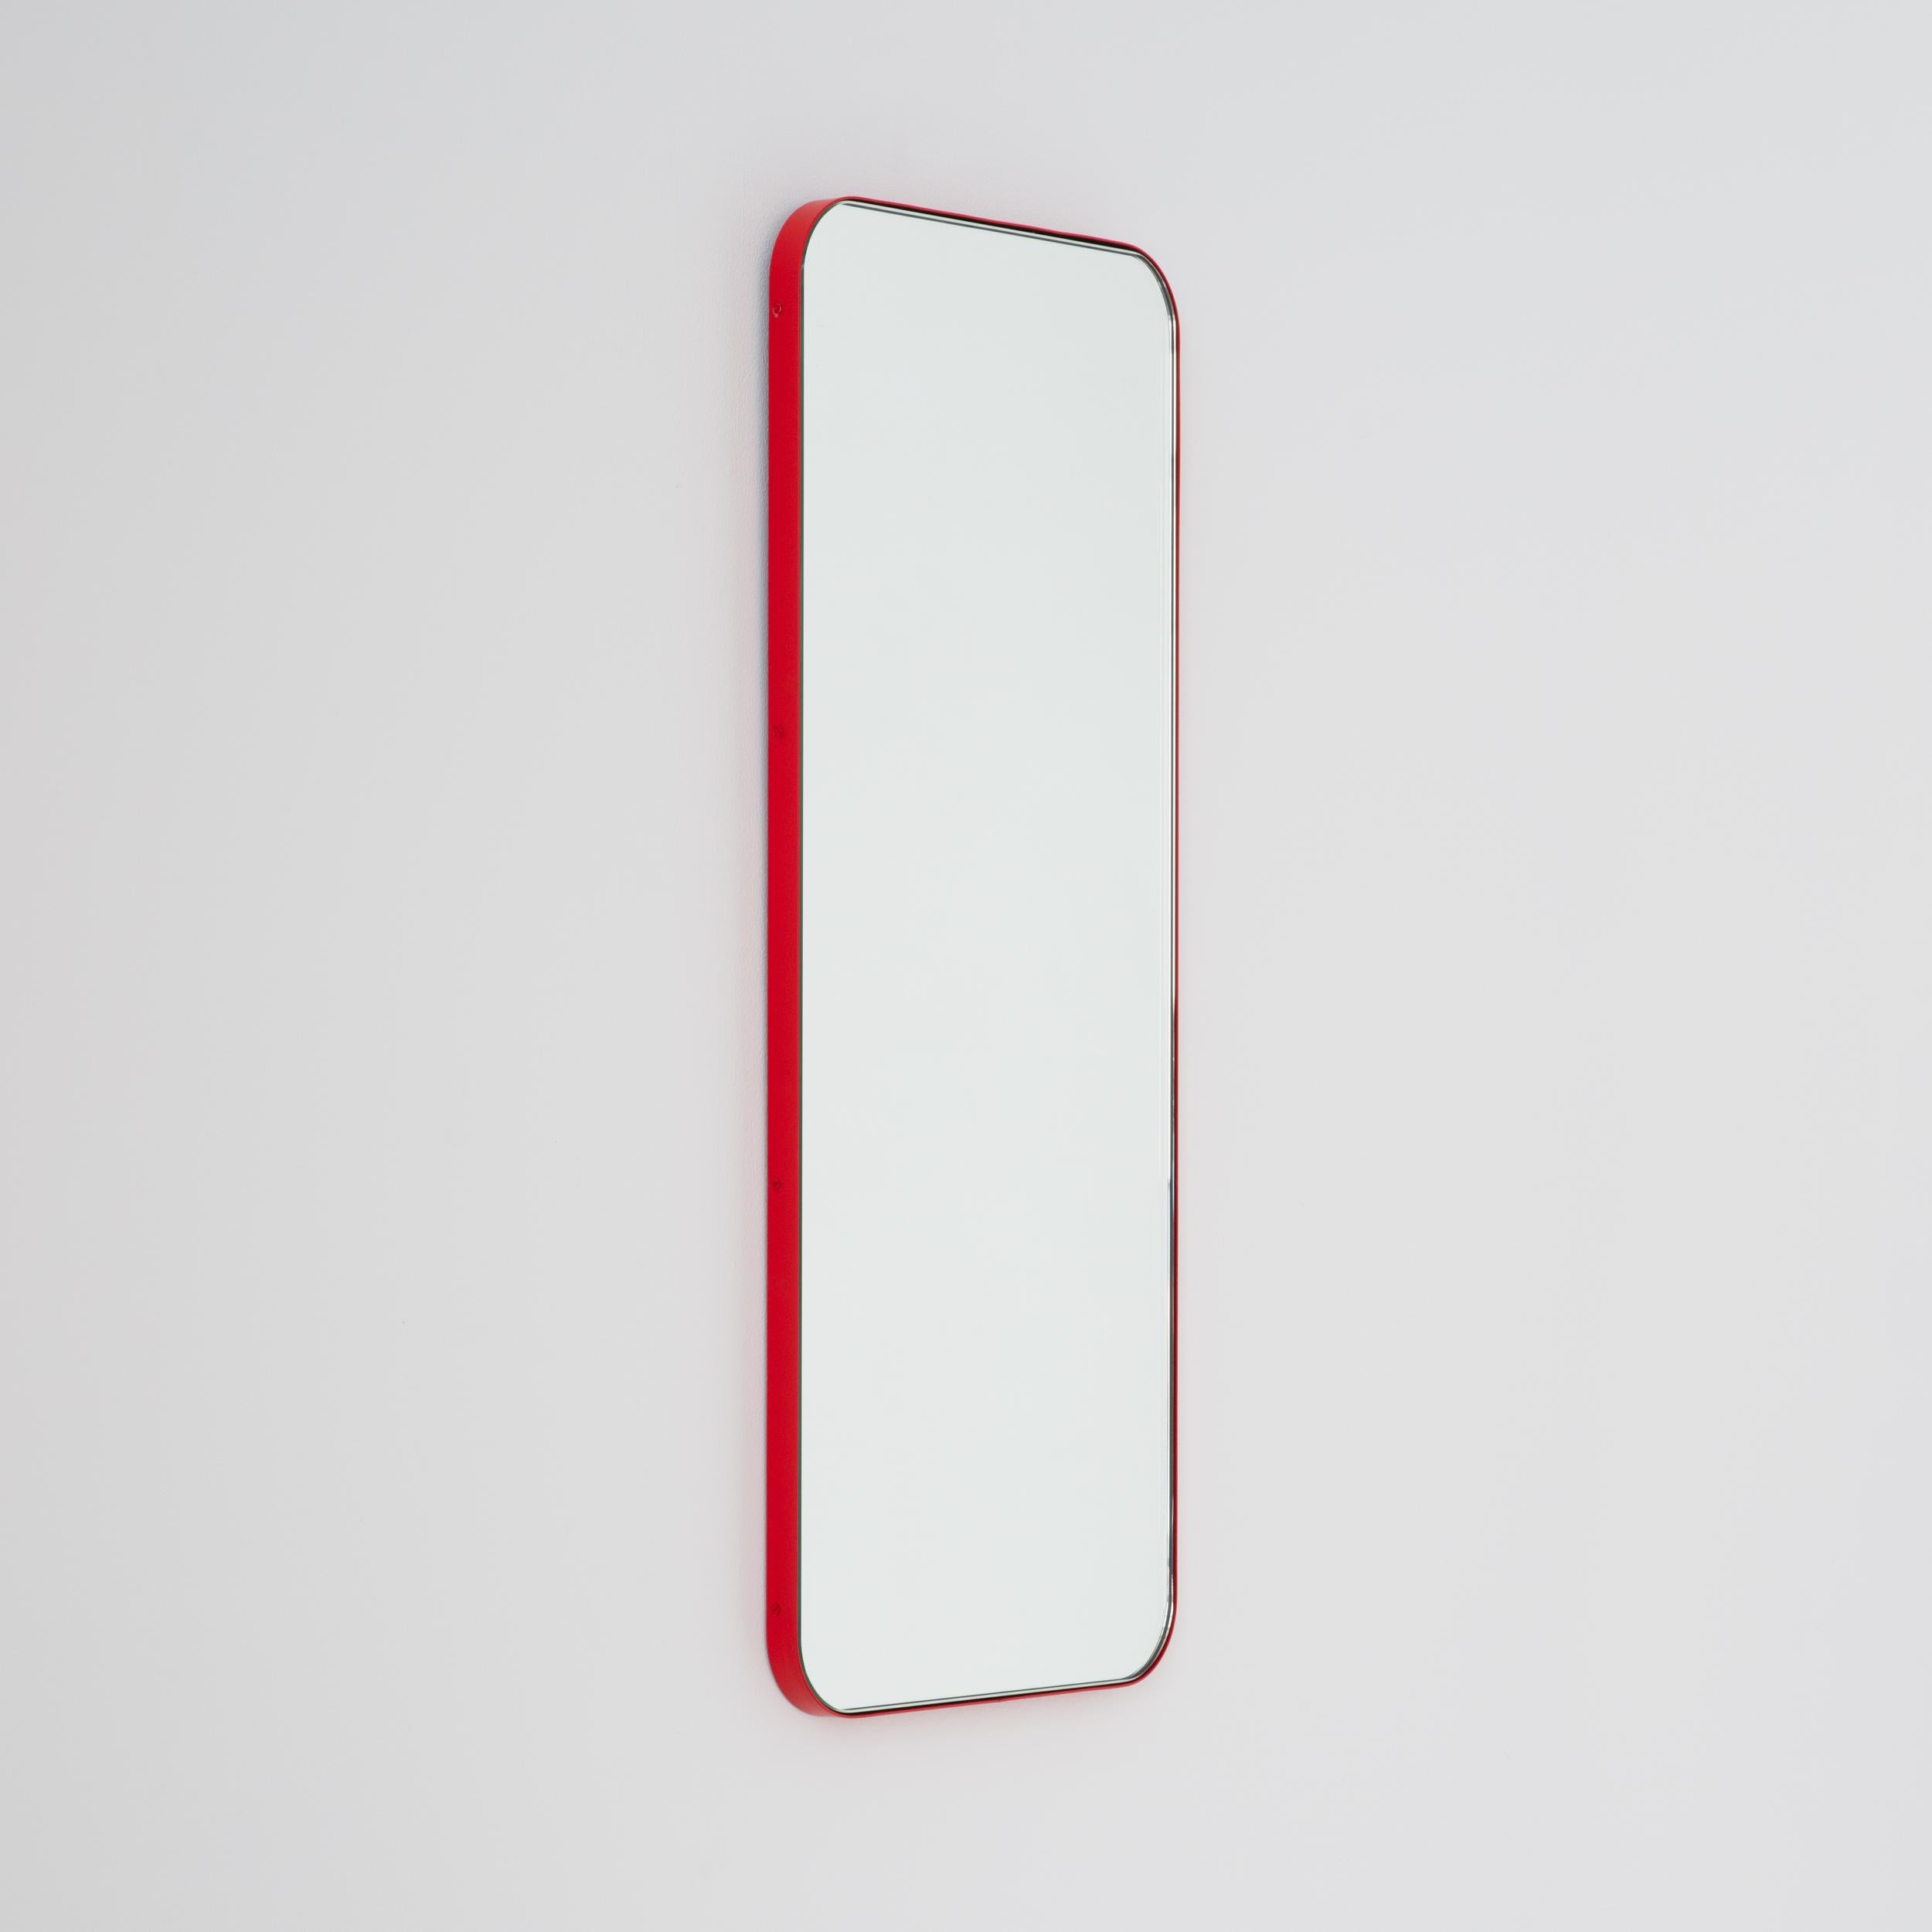 Miroir rectangulaire minimaliste avec un cadre rouge moderne. Une partie de la charmante collection Quadris™, conçue et fabriquée à la main à Londres, au Royaume-Uni. 

Fourni avec une barre en z spécialisée pour une installation facile. Un système